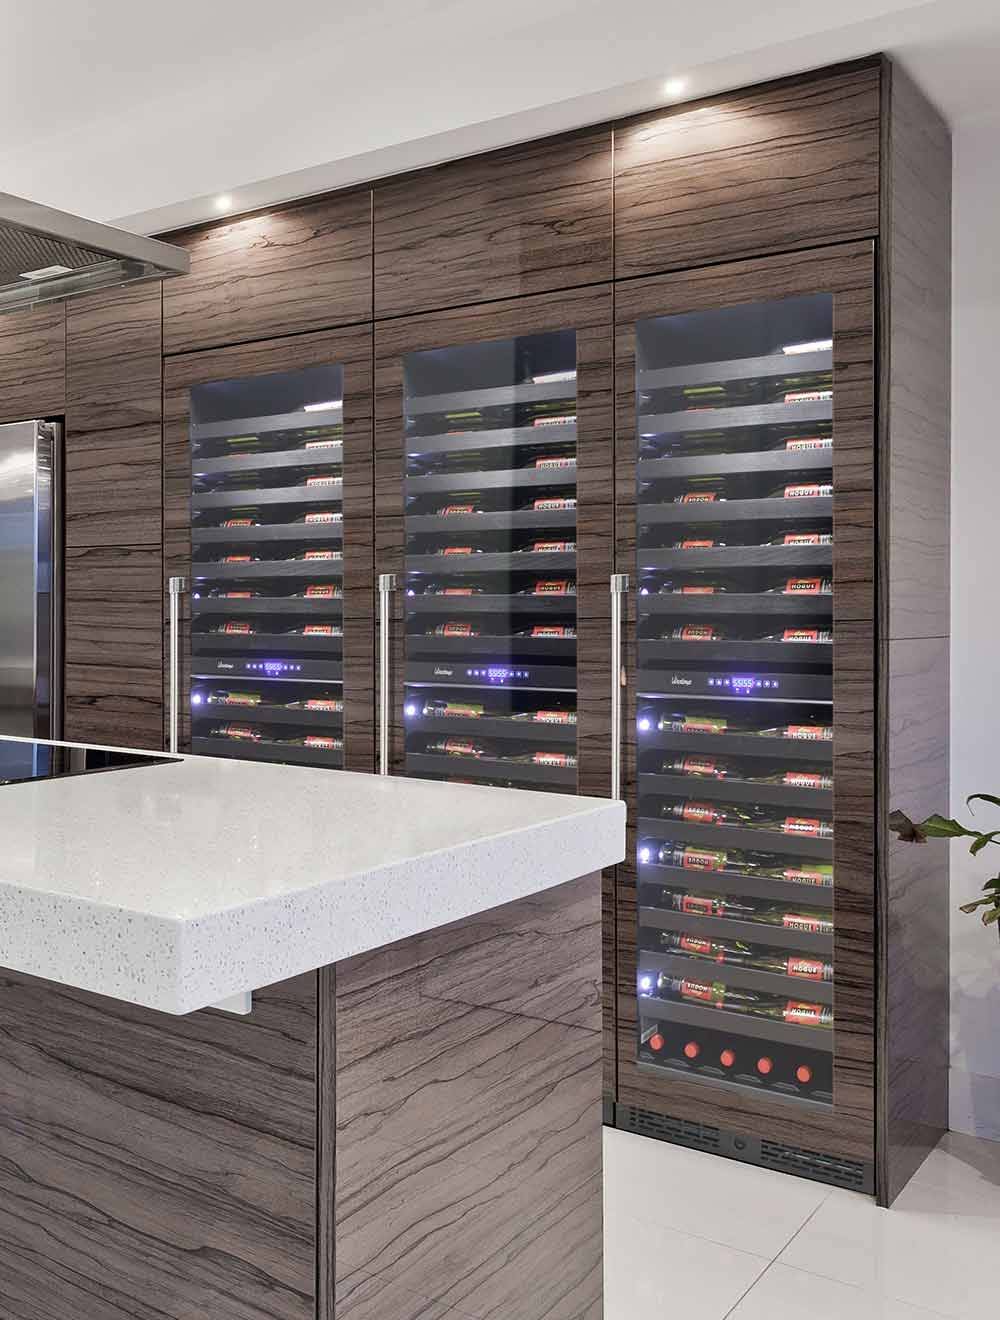 24 inch Metal Shelves Built-In Wine Fridge Cooler Beverage Fridge Clear Glass Door, 24 inch / 3 Year